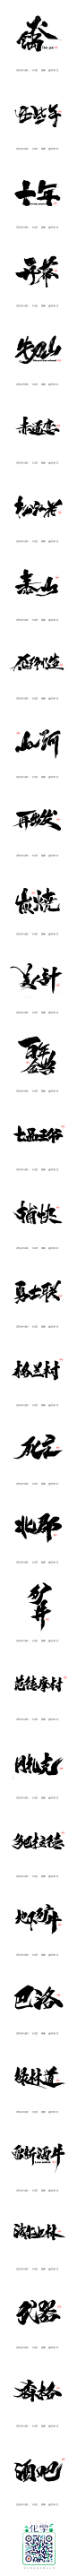 雨泽|毛笔字|拾贰月/叁_字体传奇网-中国首个字体品牌设计师交流网 #字体#